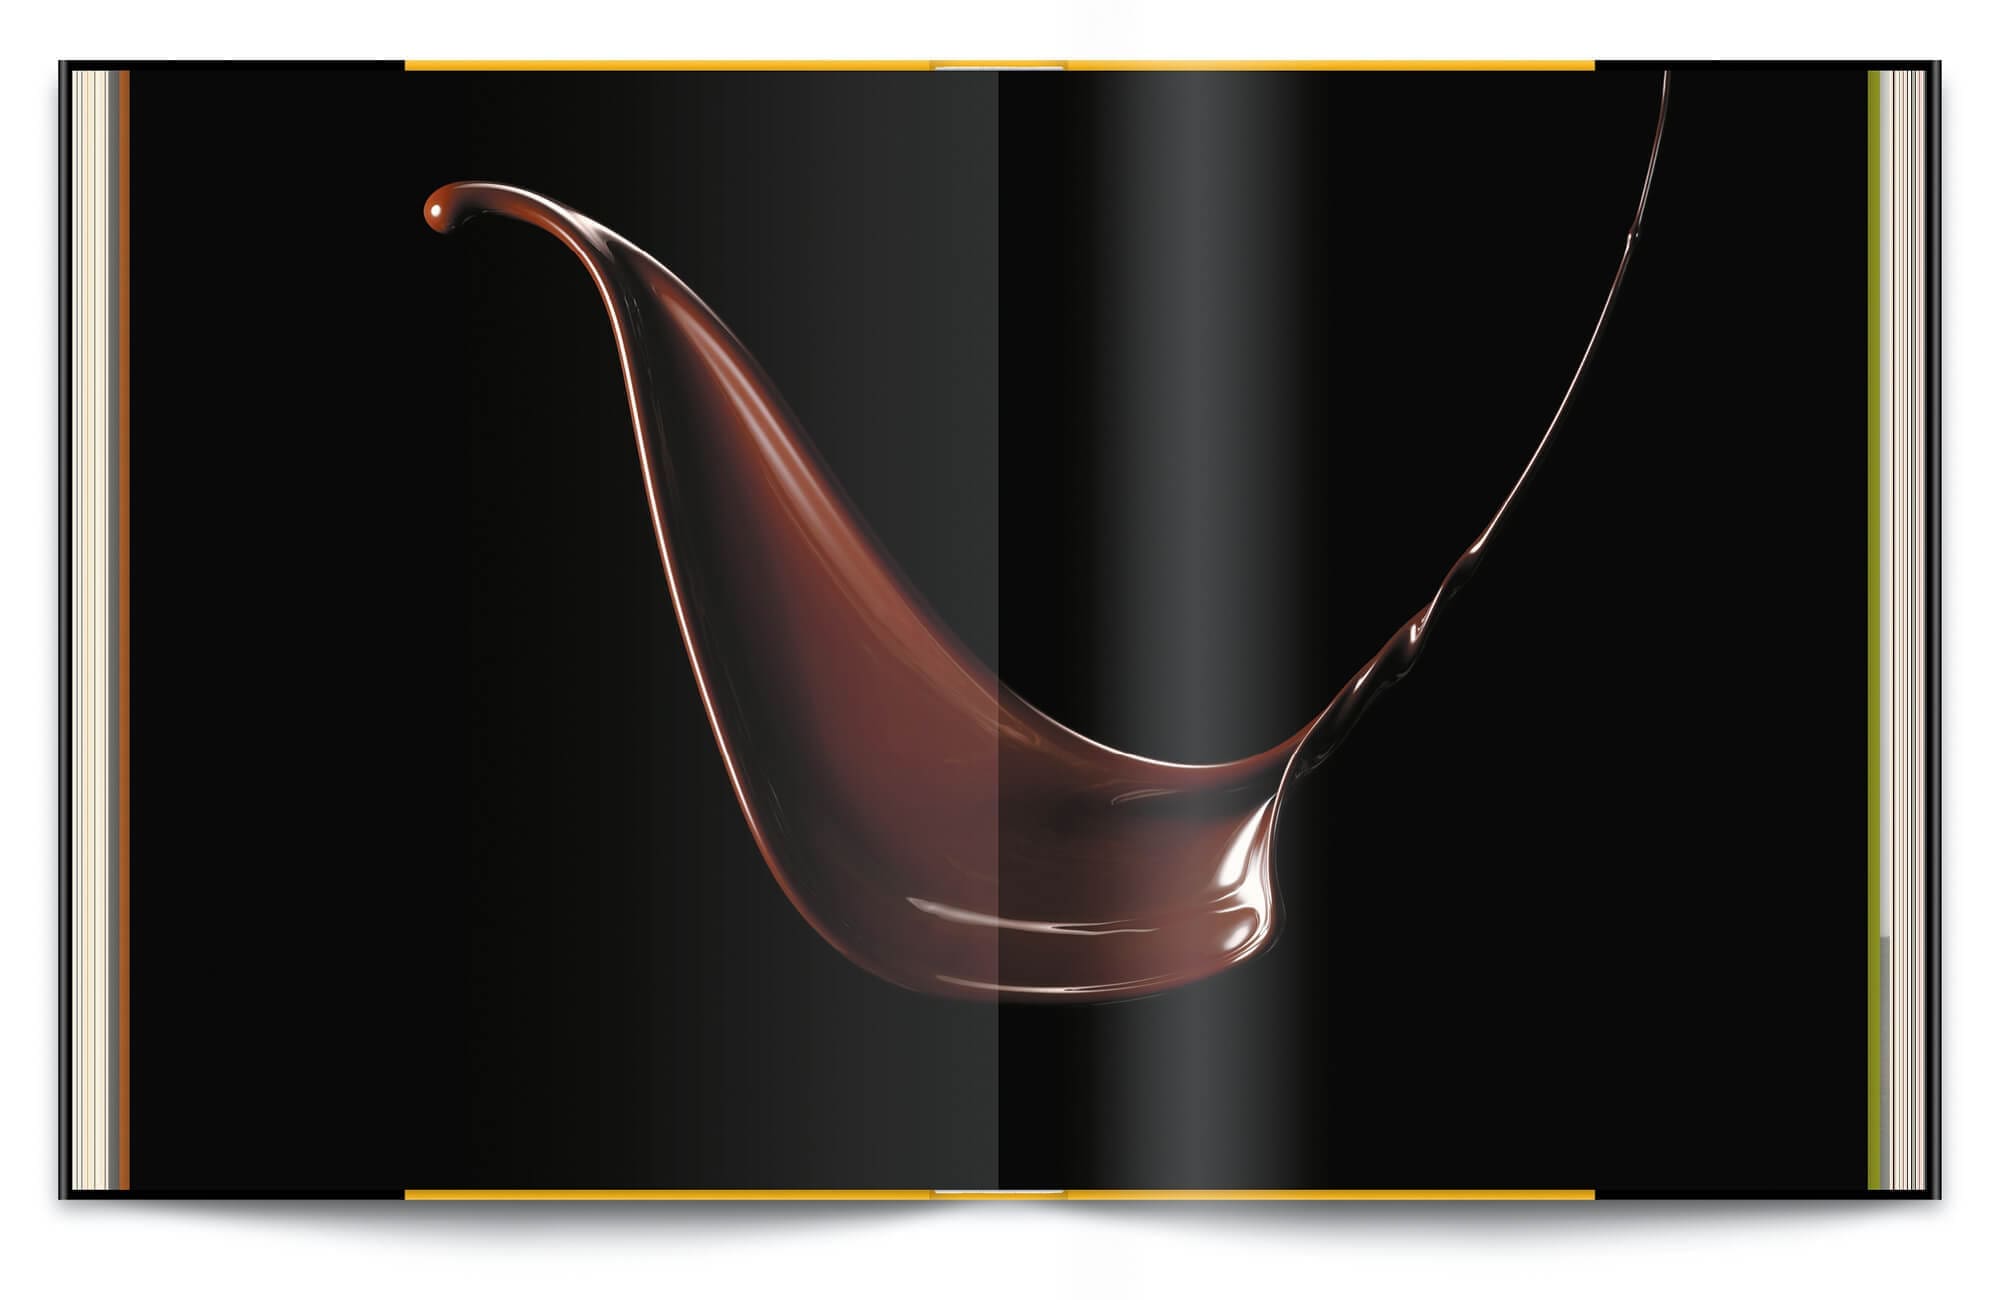 Le livre Infiniment de Pierre Hermé avec une vague de chocolat, photographie de Jean-Jacques Pallot, IchetKar à la direction artistique et au design éditorial